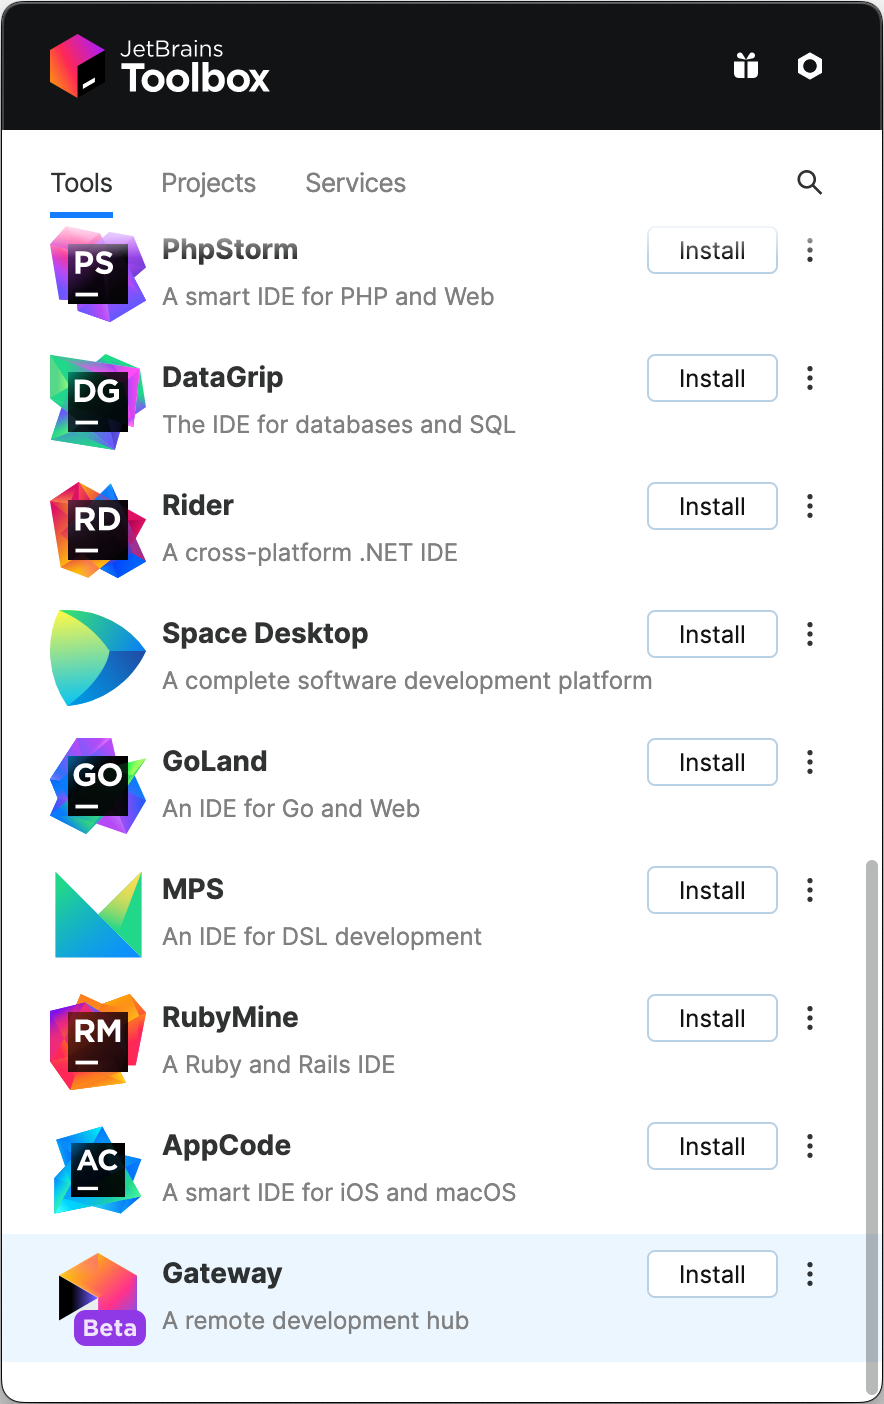 Captura de tela da Caixa de Ferramentas do JetBrains com "Gateway" na parte inferior da lista de aplicativos. Cada aplicativo tem um botão "Instalar" ao lado.